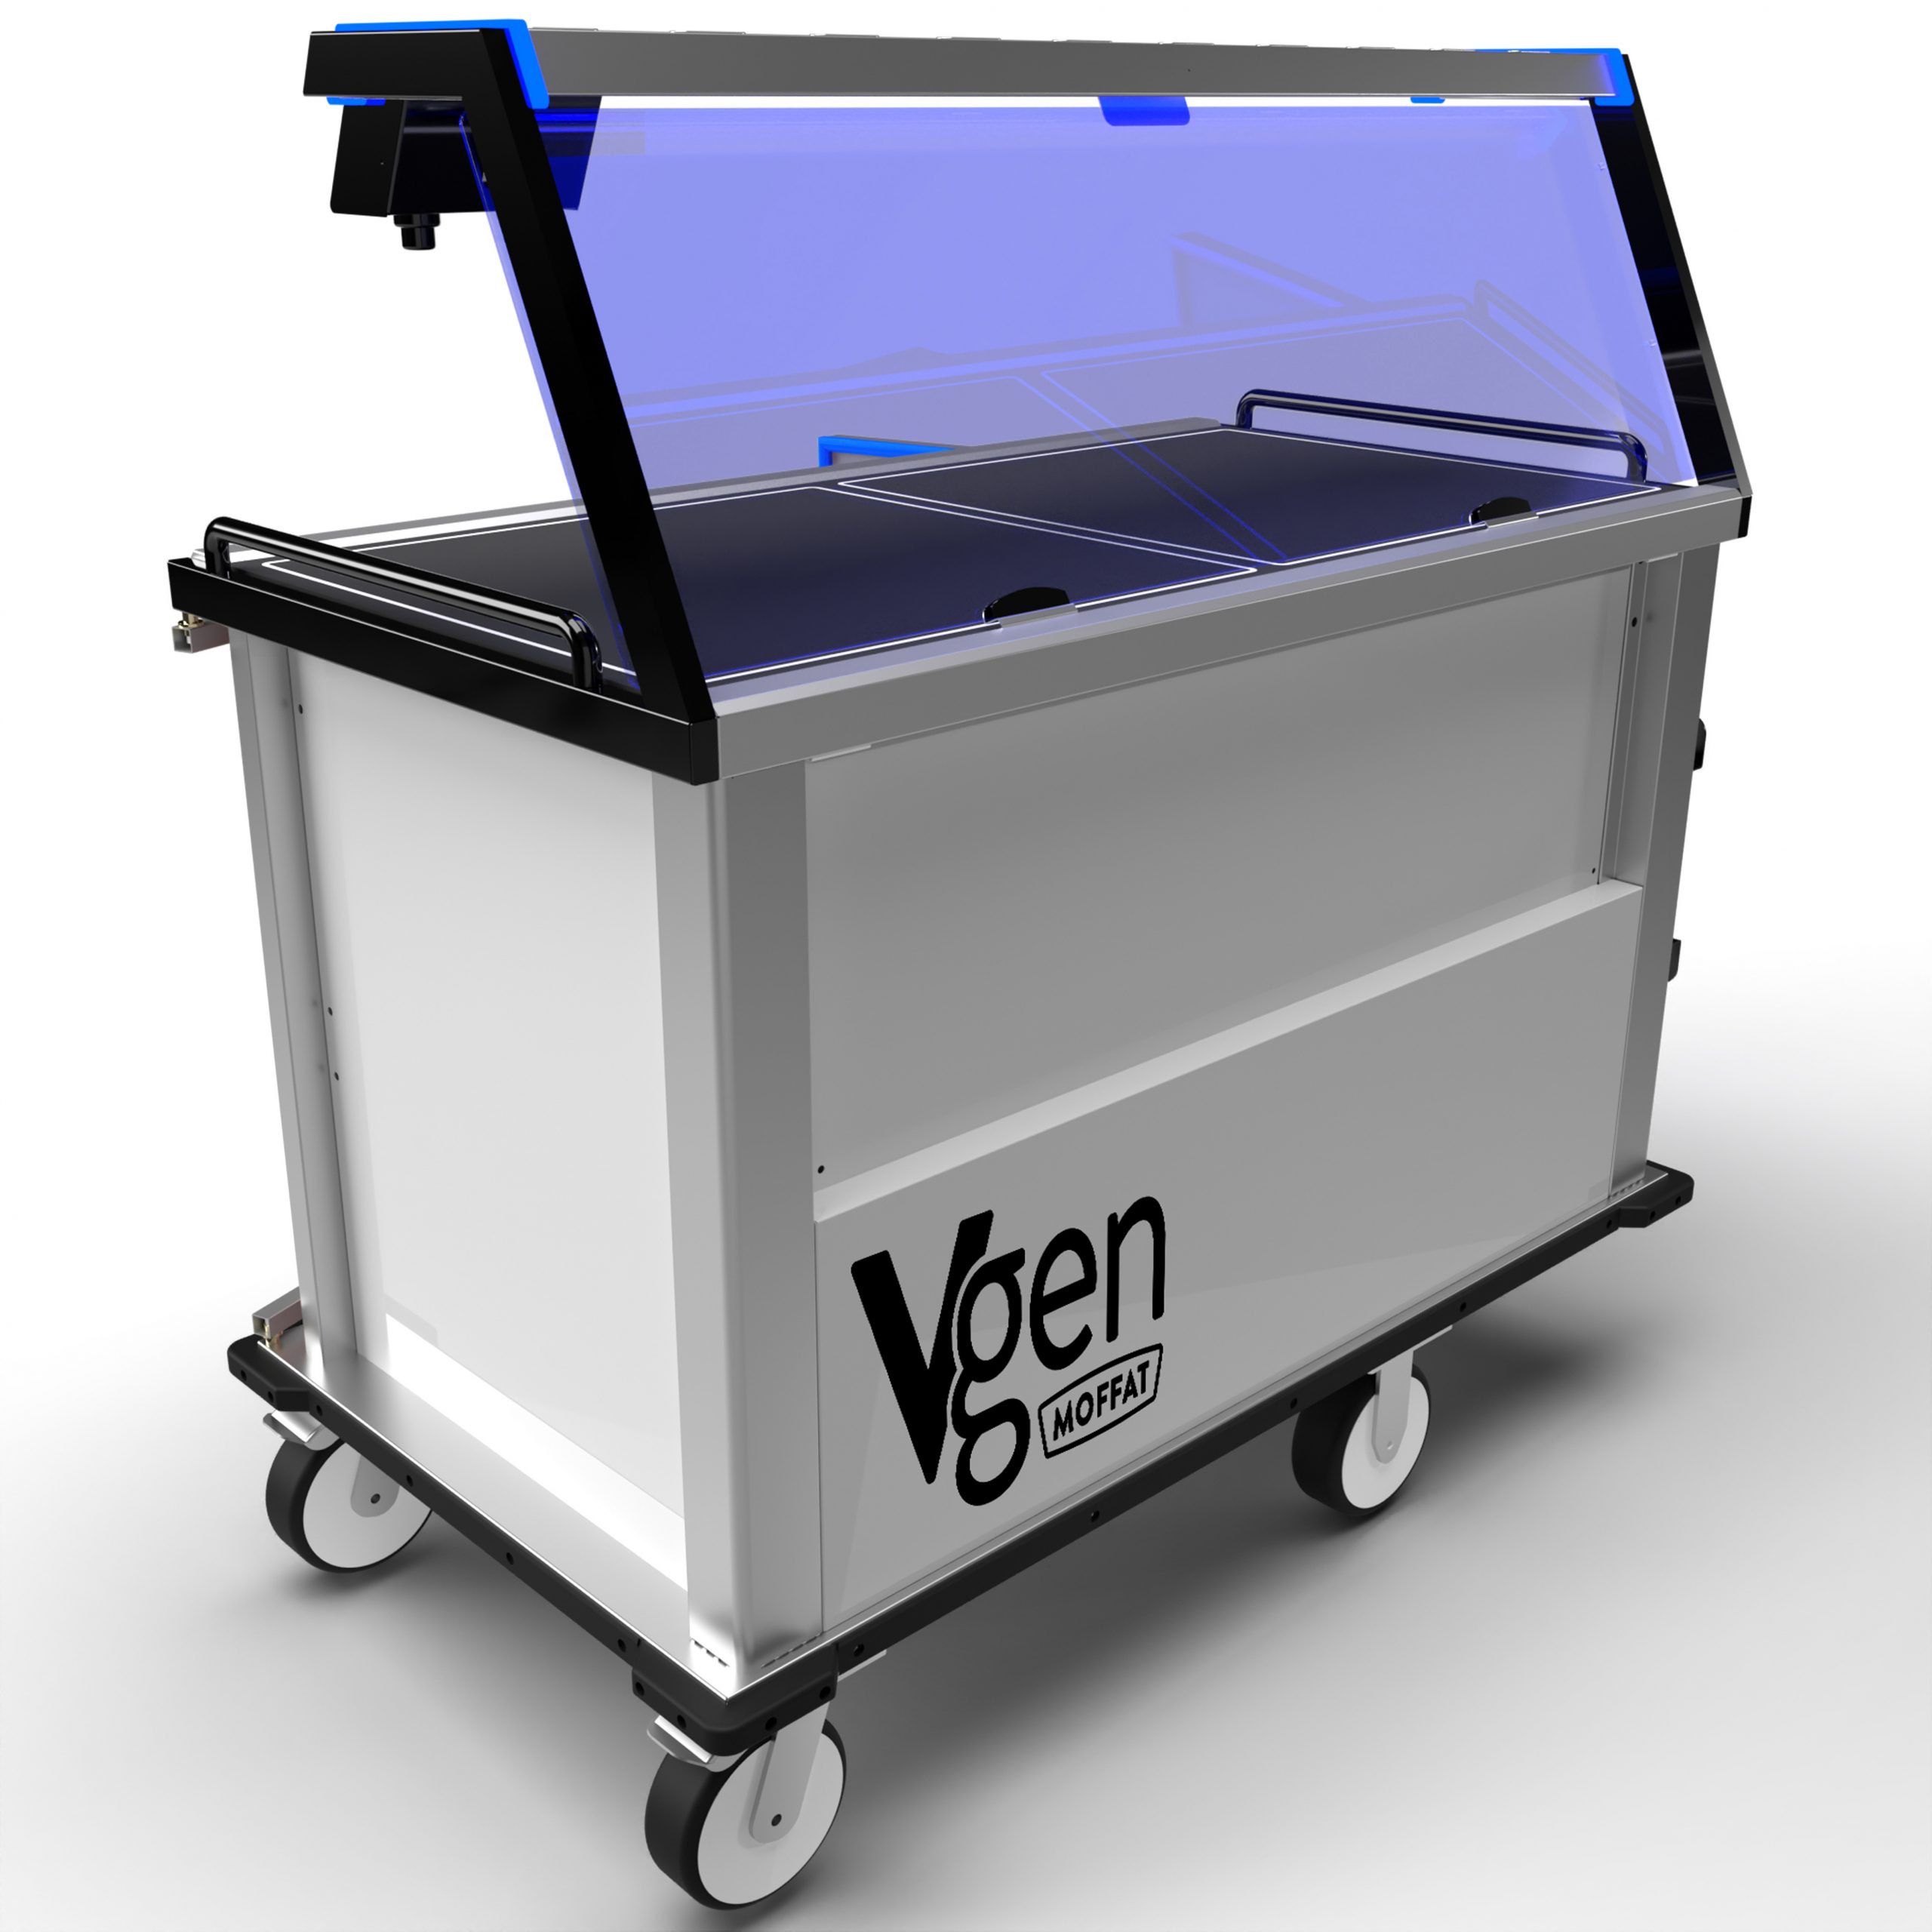 Moffat’s latest Vgen trolley: very versatile, very efficient